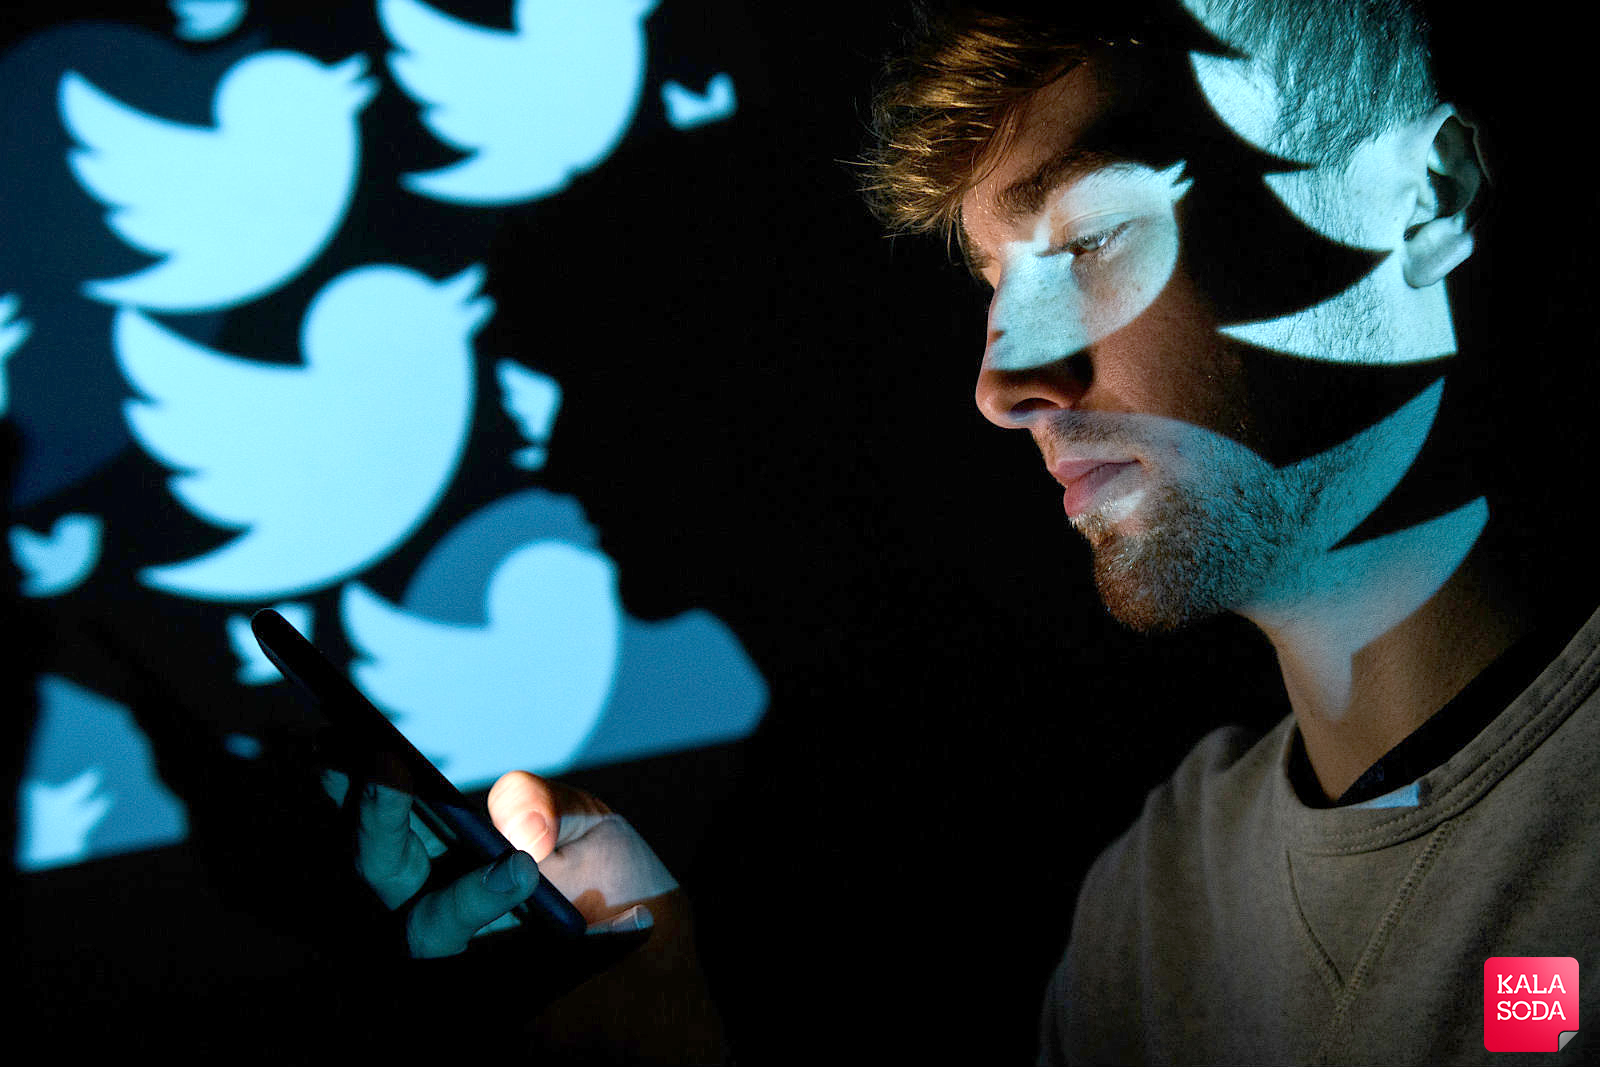 توئیتر کاربرانش را در برابر مزاحمان بیمه می کند|کالاسودا